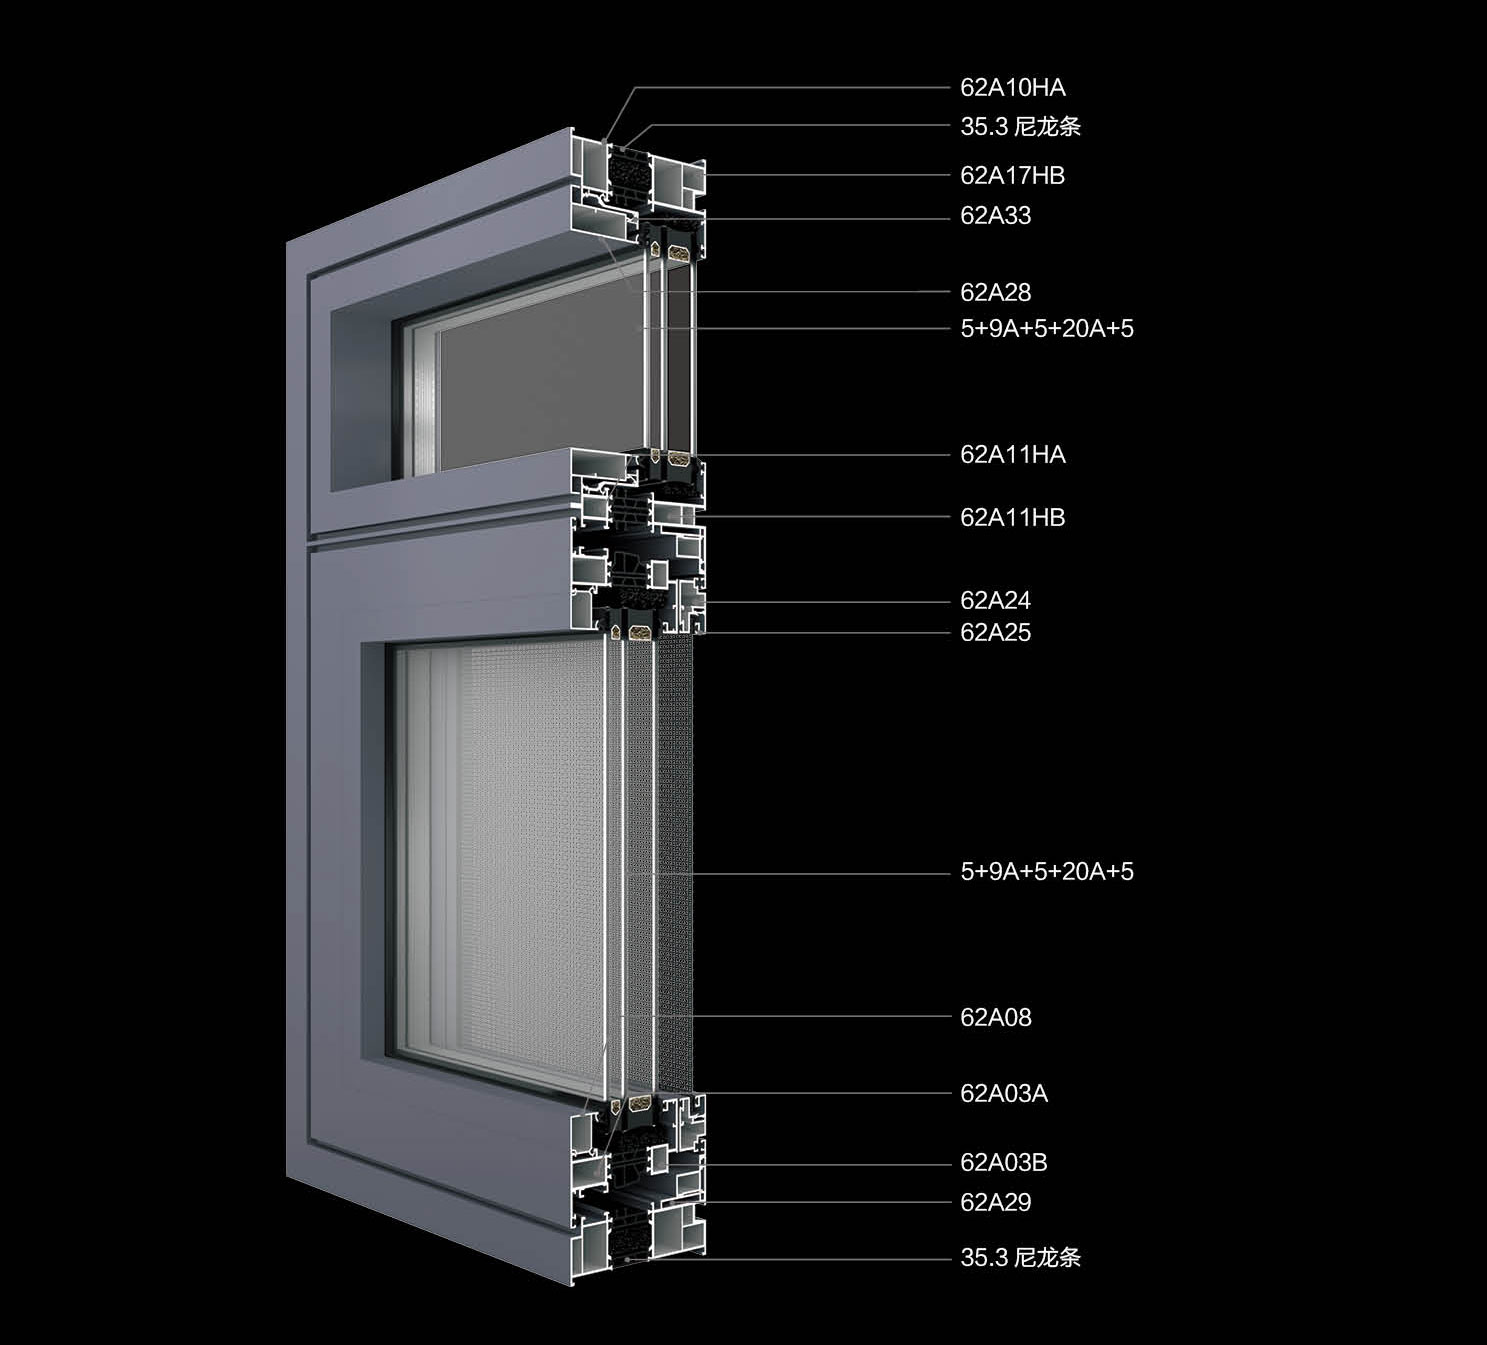 110NS-B极窄隐排（三玻两腔）双内开系统窗